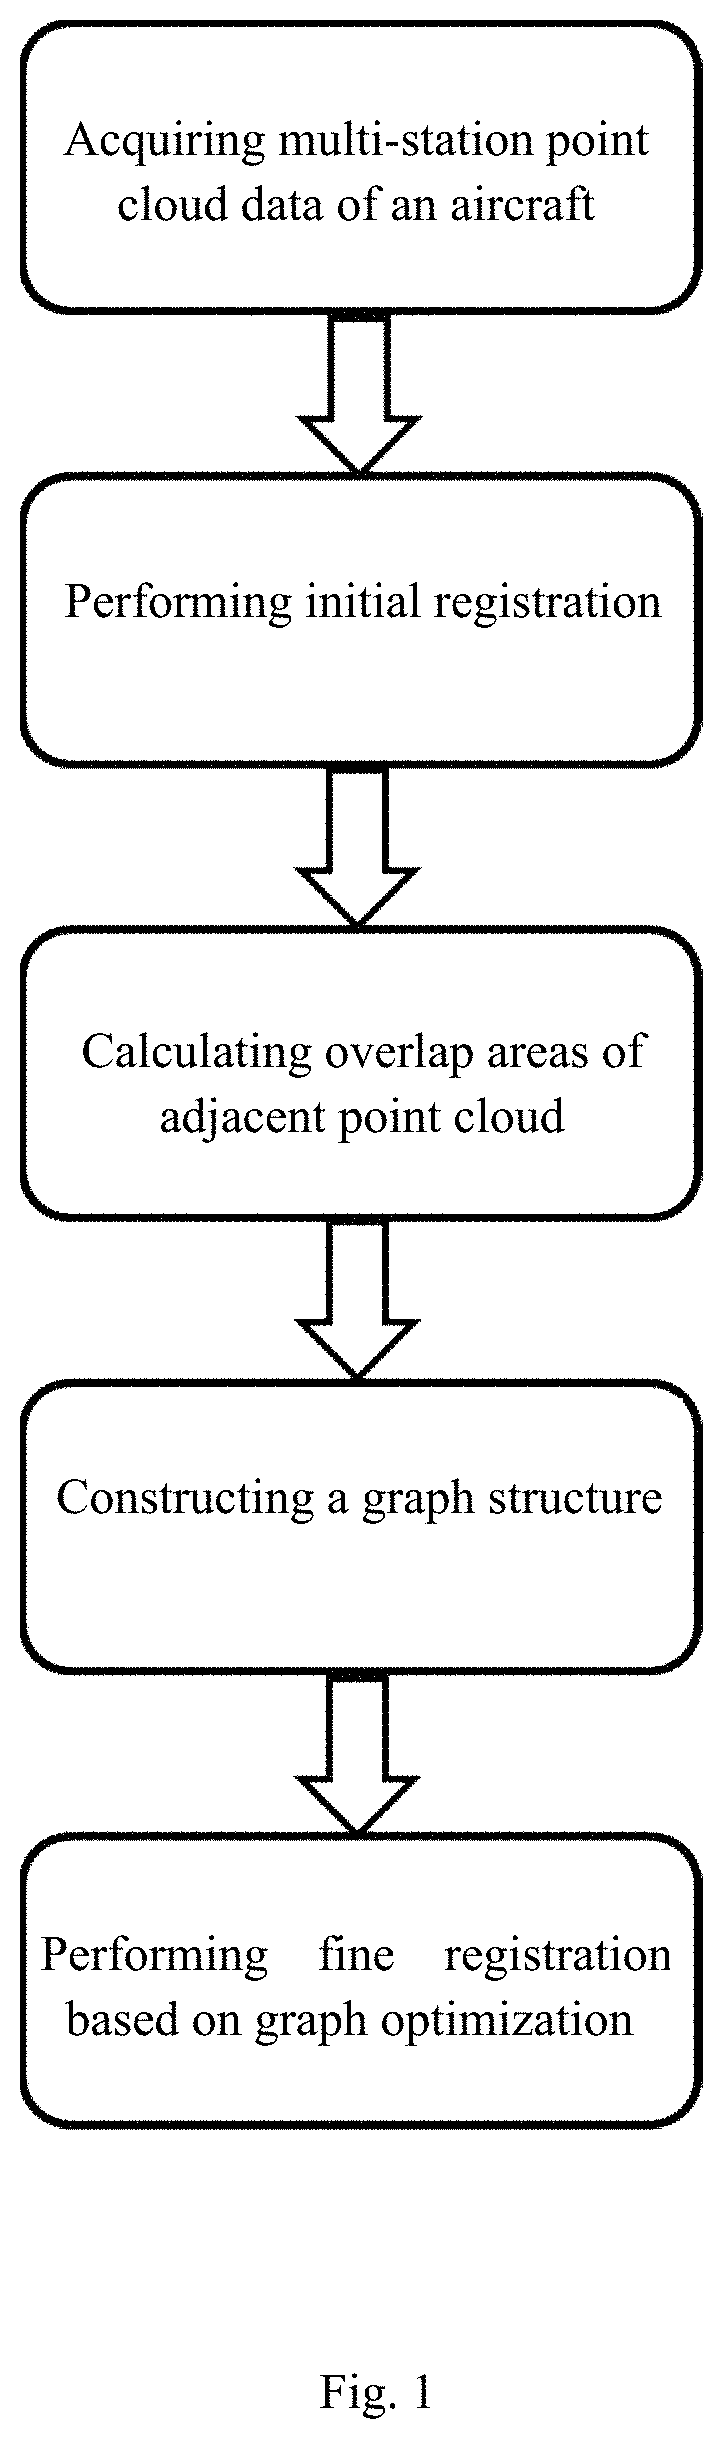 Multi-station scanning global point cloud registration method based on graph optimization